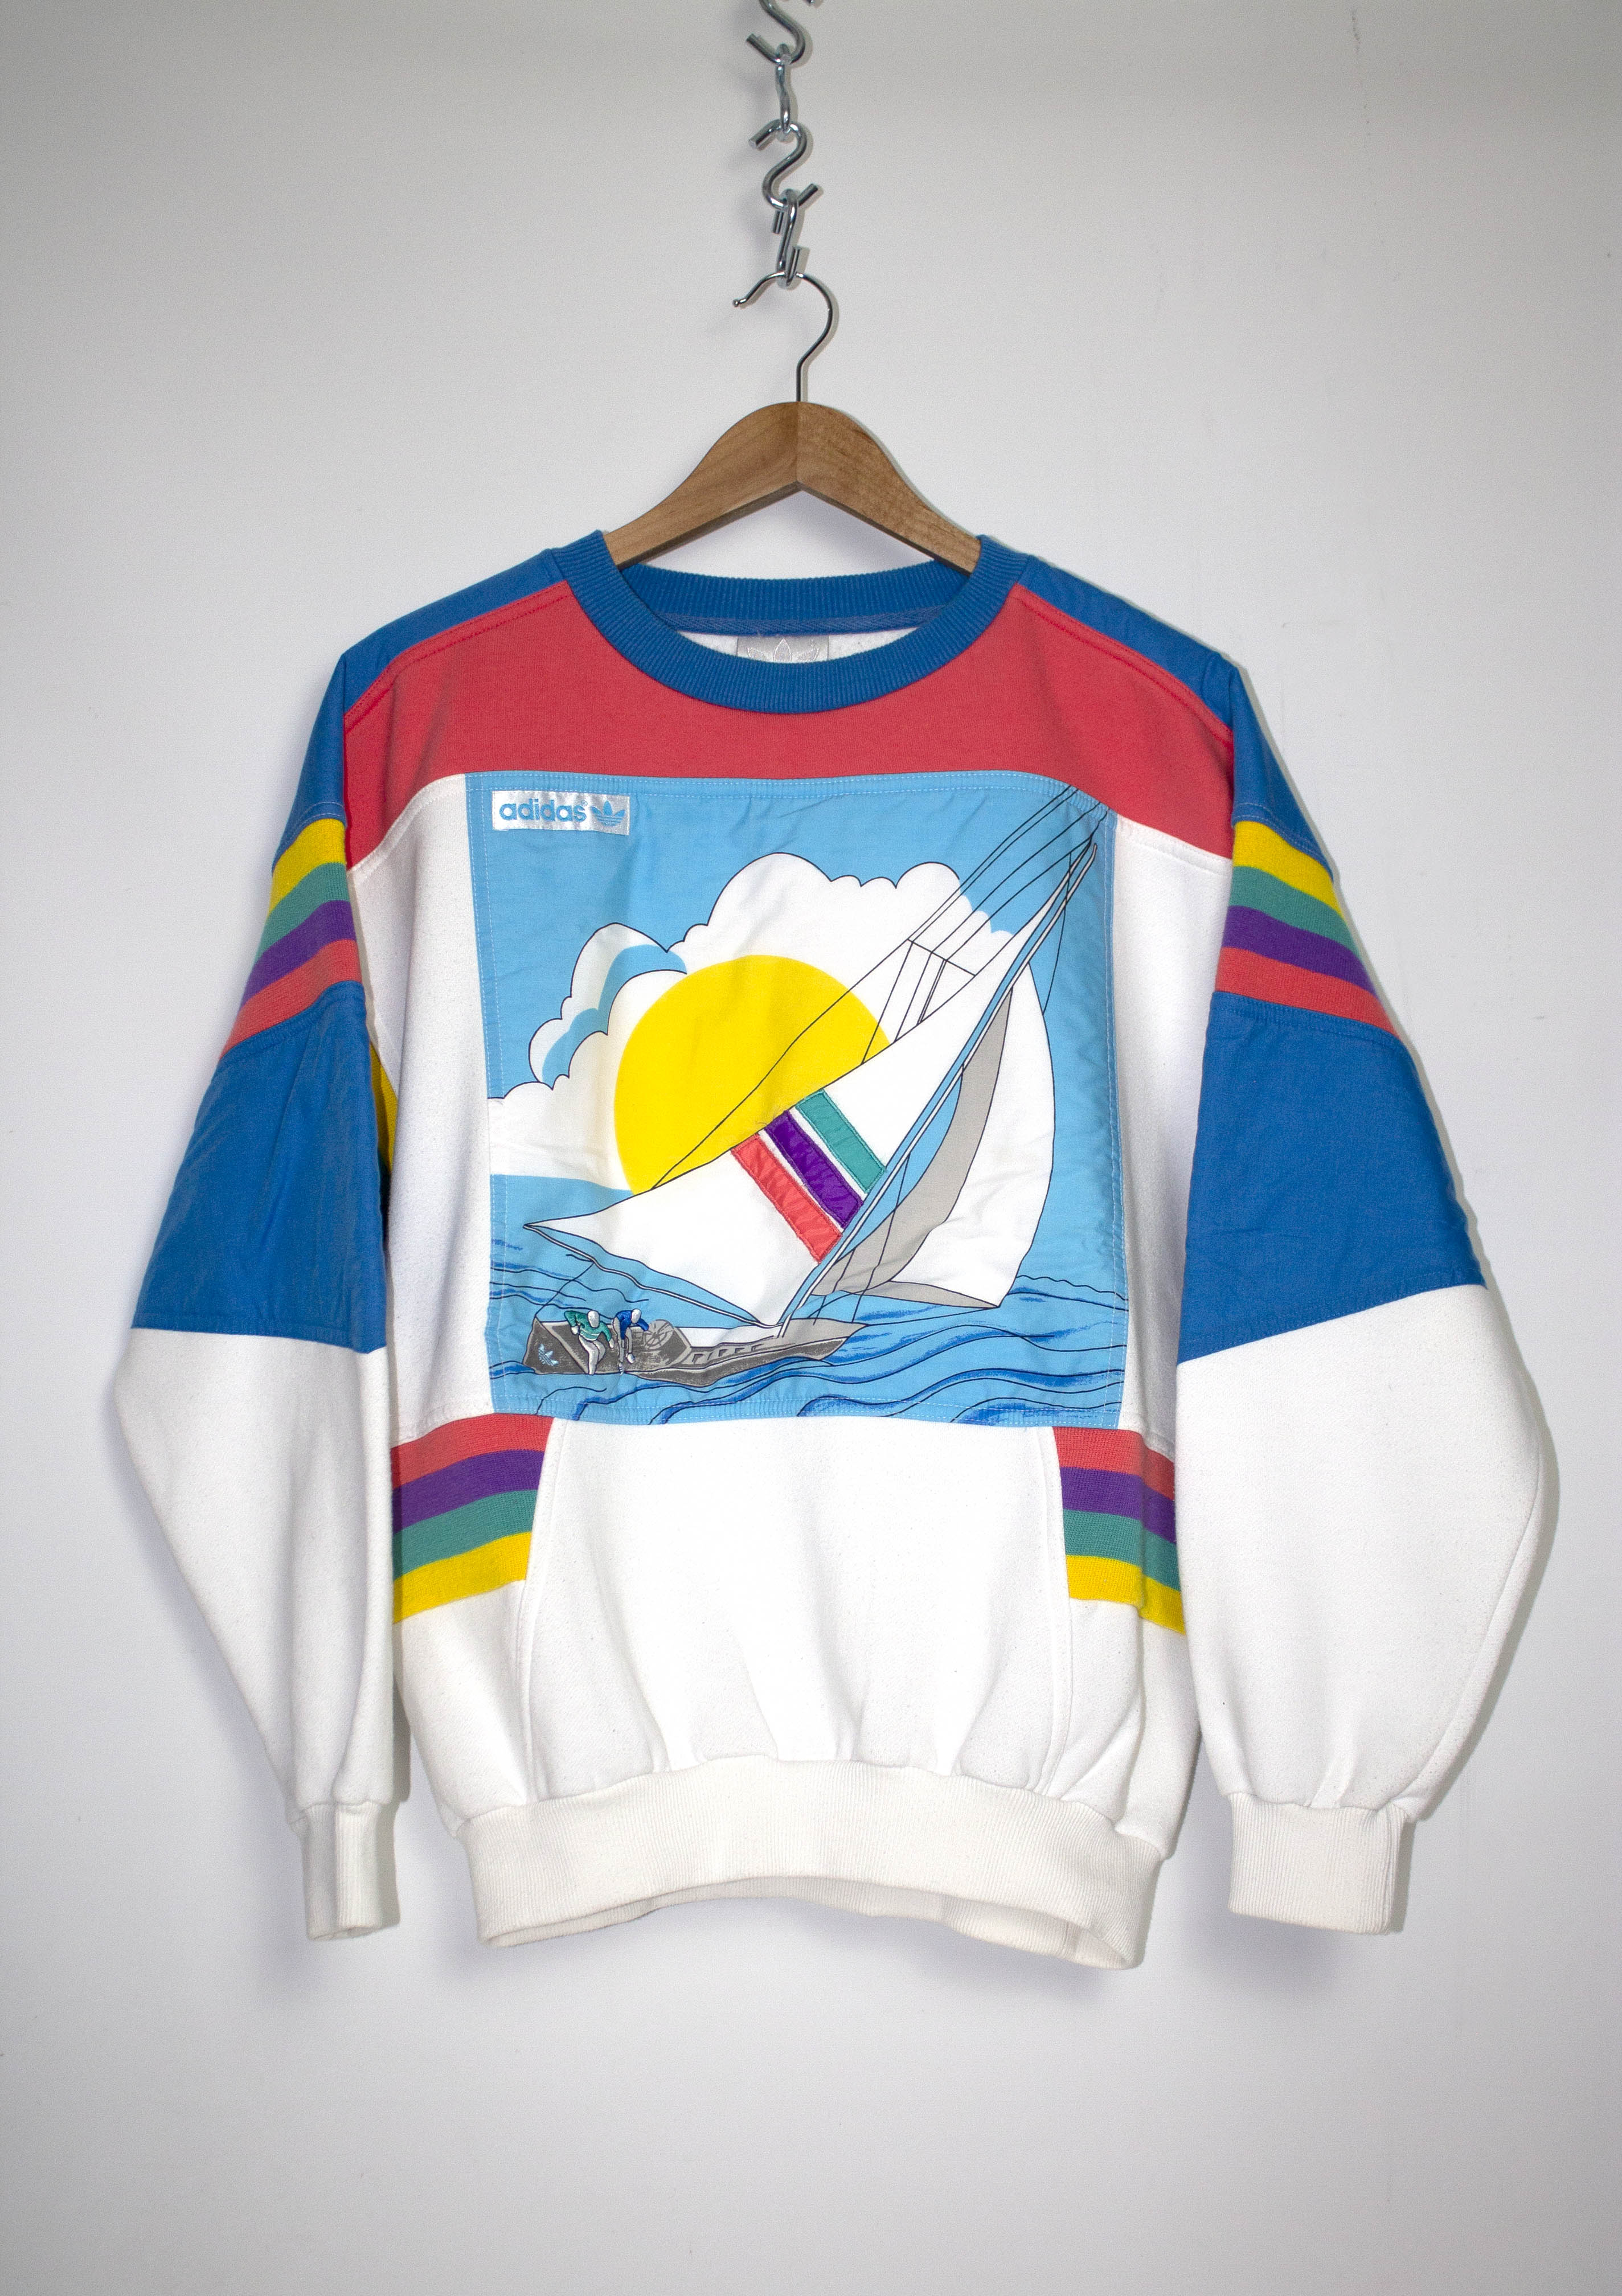 Vintage 80's Adidas Regatta Sailing Crewneck Sweatshirt Sz M